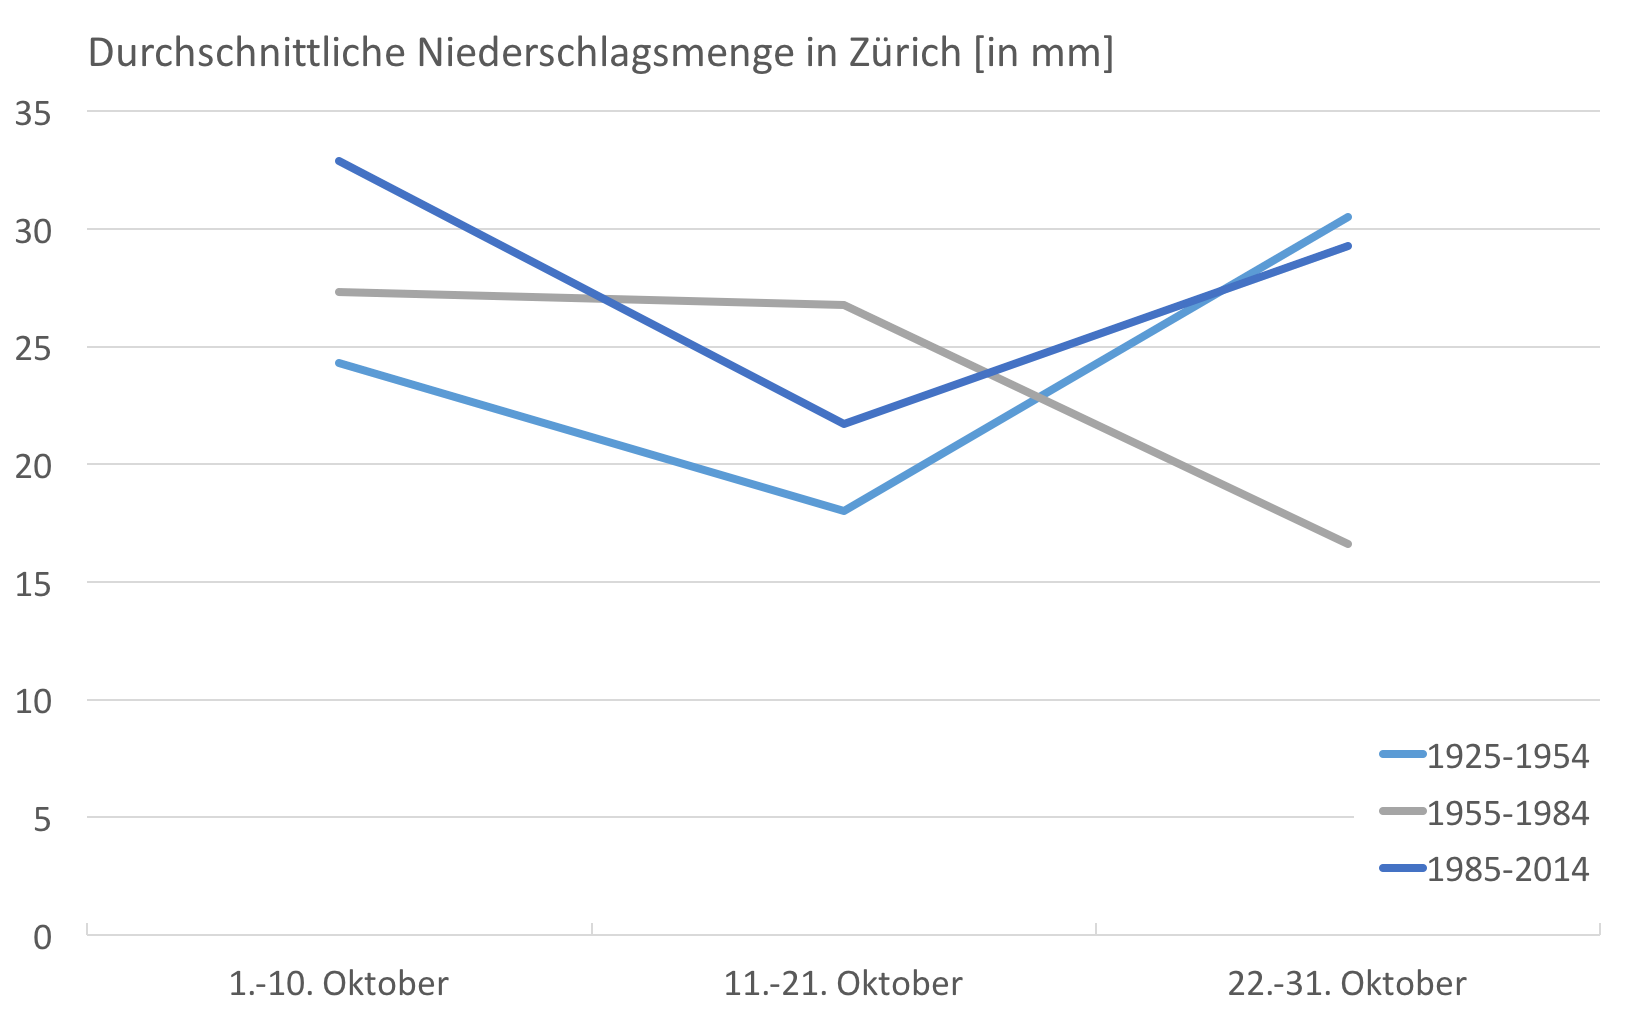 Auf den Altweibersommer war früher (1925-1954) in Zürich Verlass. Mitte Oktober gab es deutlich weniger Regen als zum Monatsanfang und -ende. Dieses Muster verschwand in der Periode 1955-1984. In den letzten 30 Jahren kehrte es zögerlich zurück.  